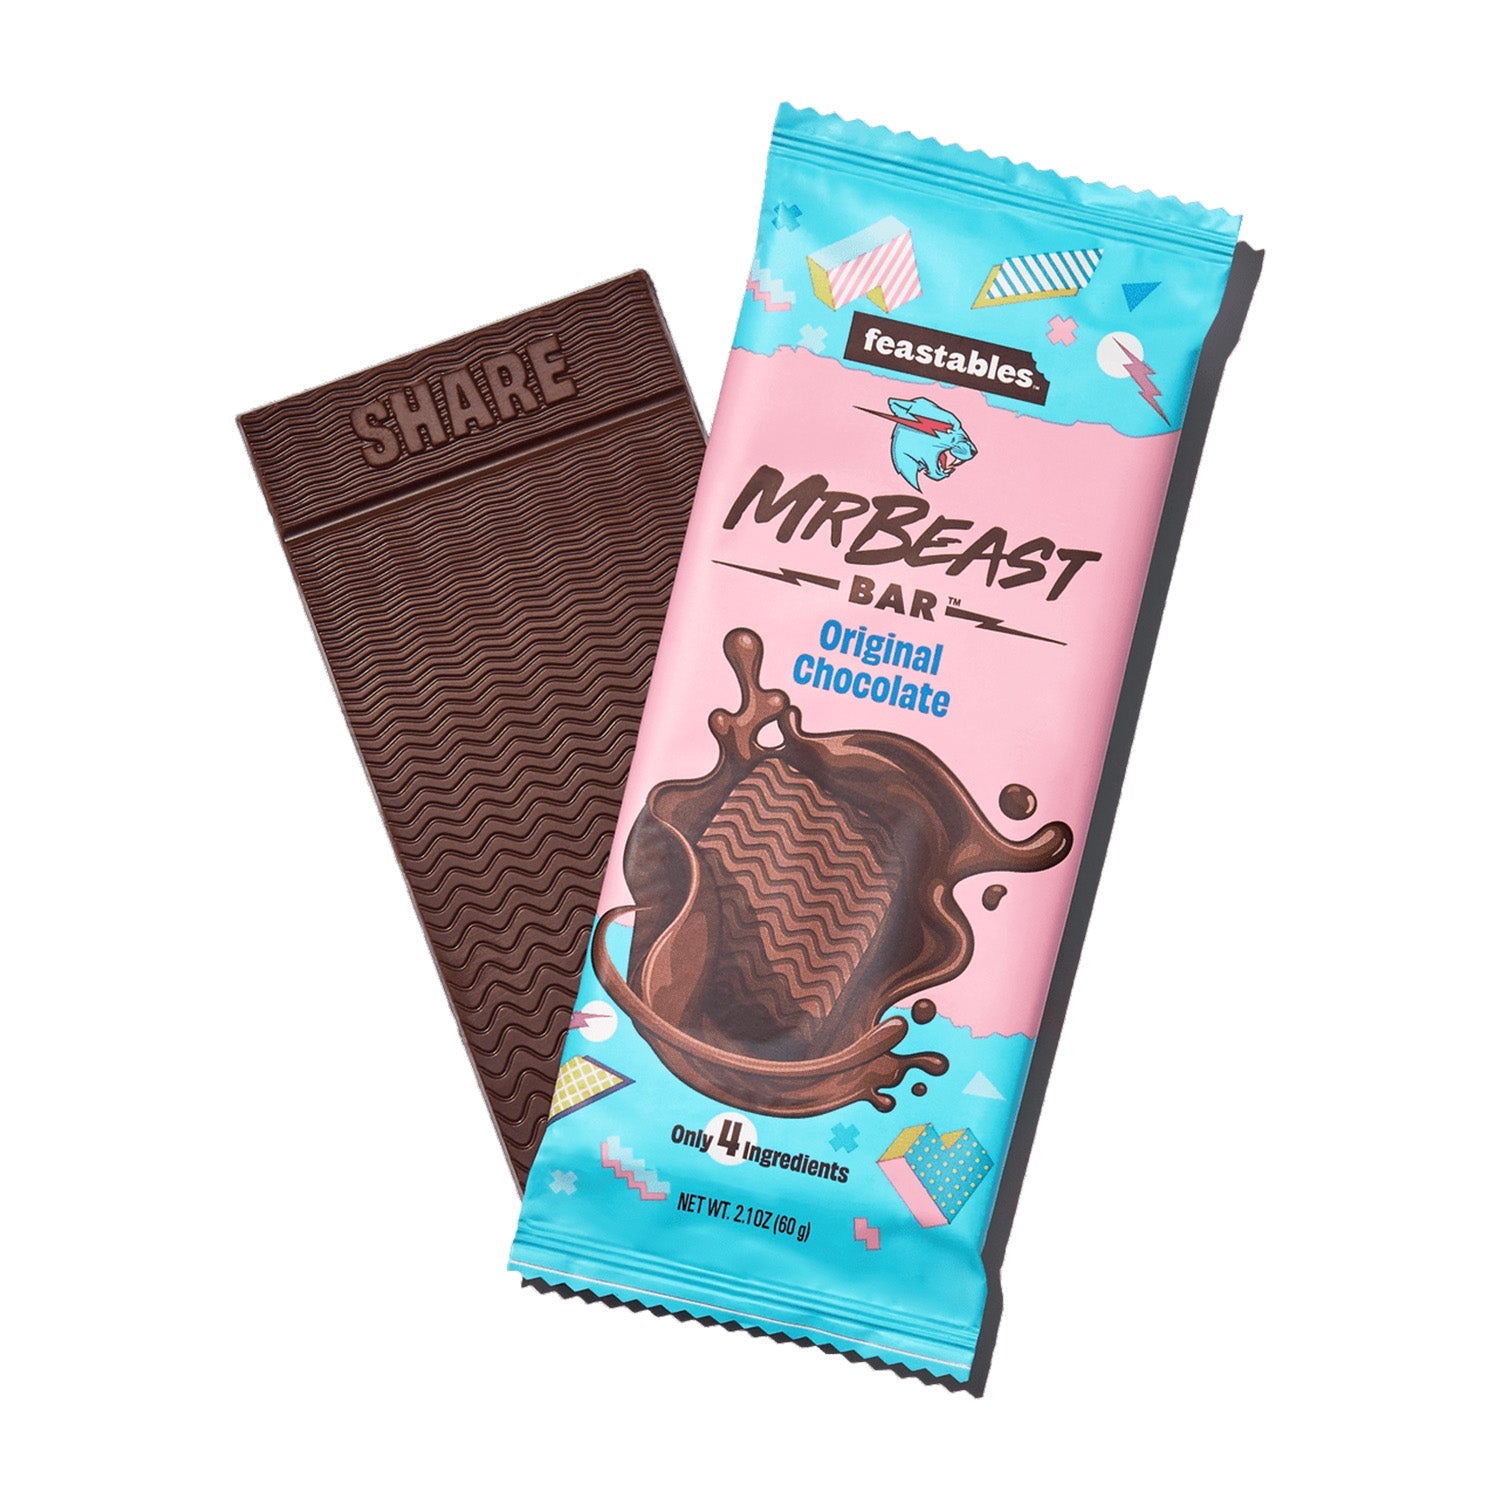 Mr. Beast Feastables Original Chocolate (60 Gram) - van Mr. Beast Feastables - Nu voor maar €4.75 bij Mijn Snoepgoed